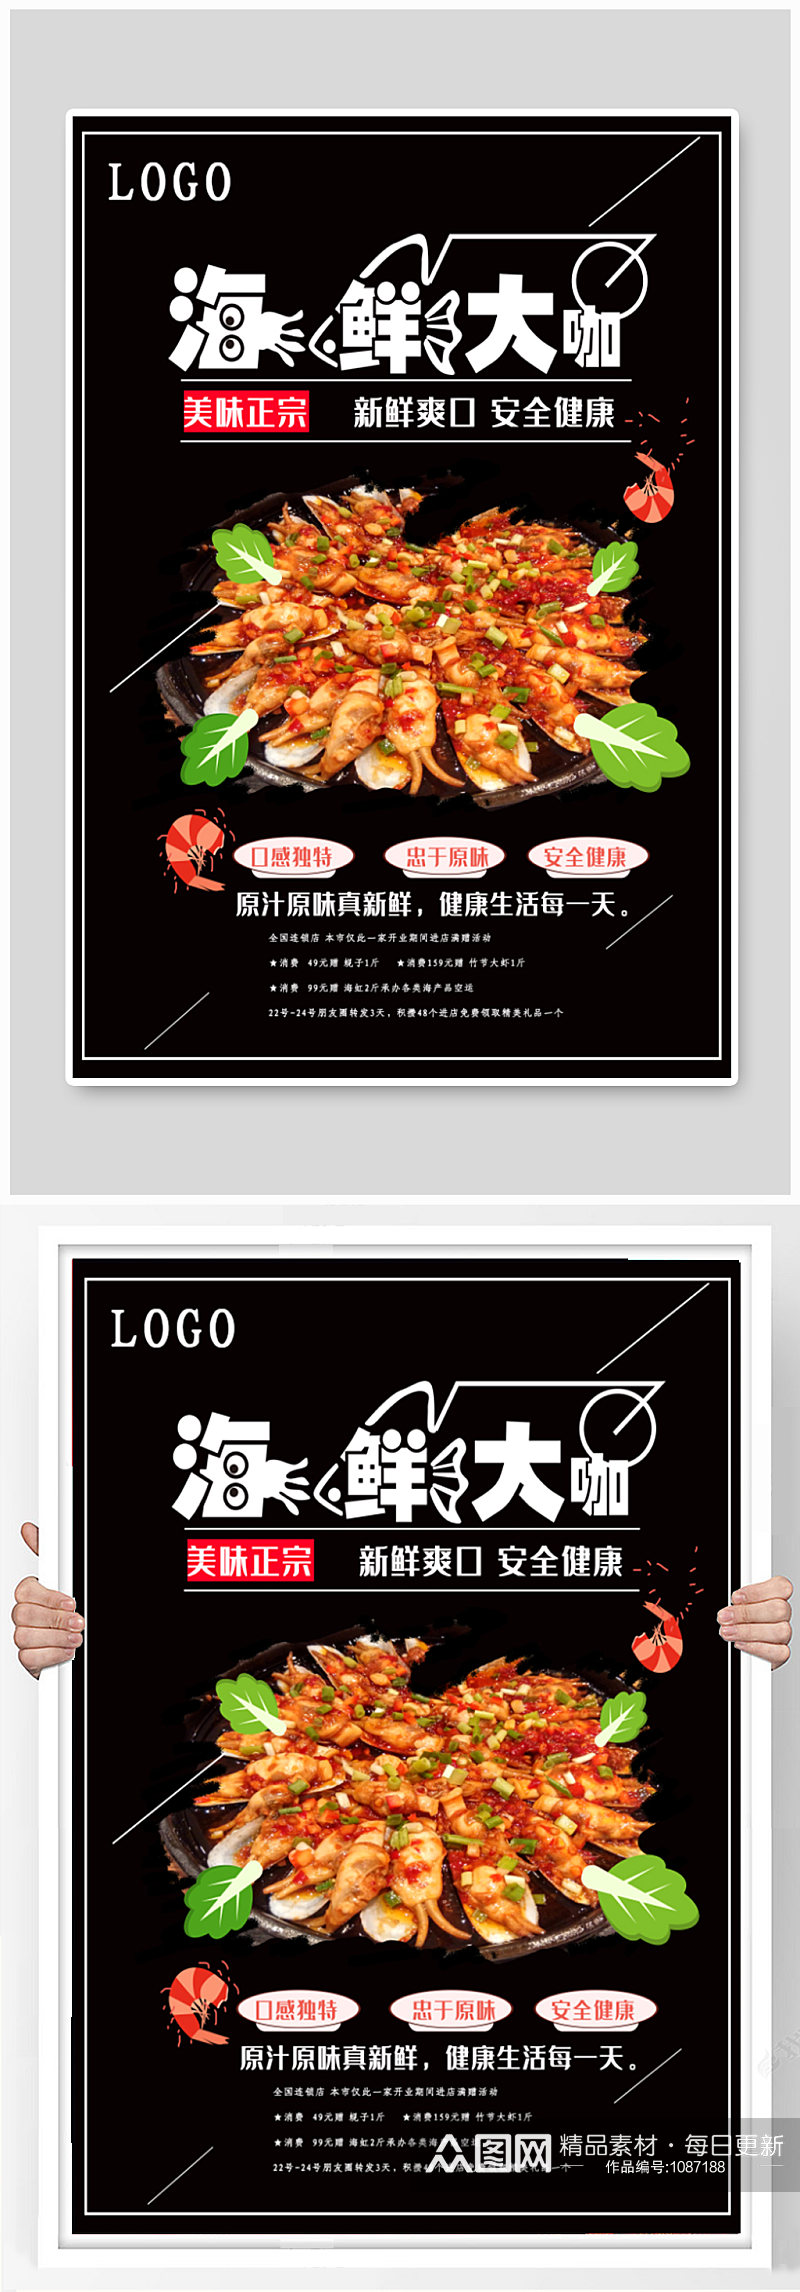 海鲜大咖美食店宣传海报素材